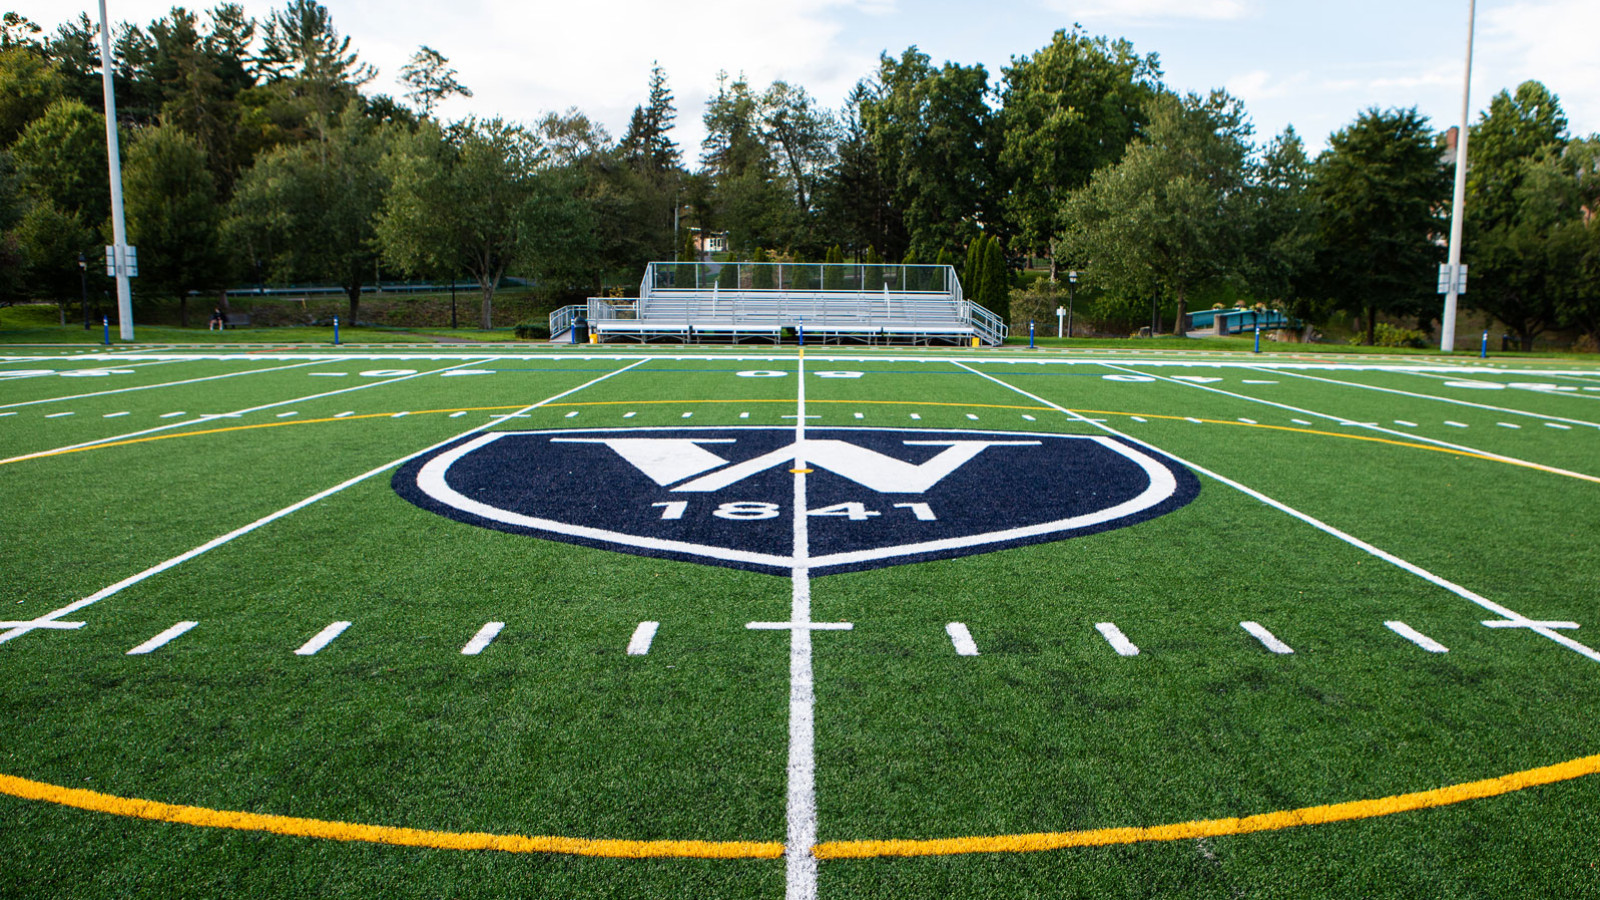 Football field with Williston logo